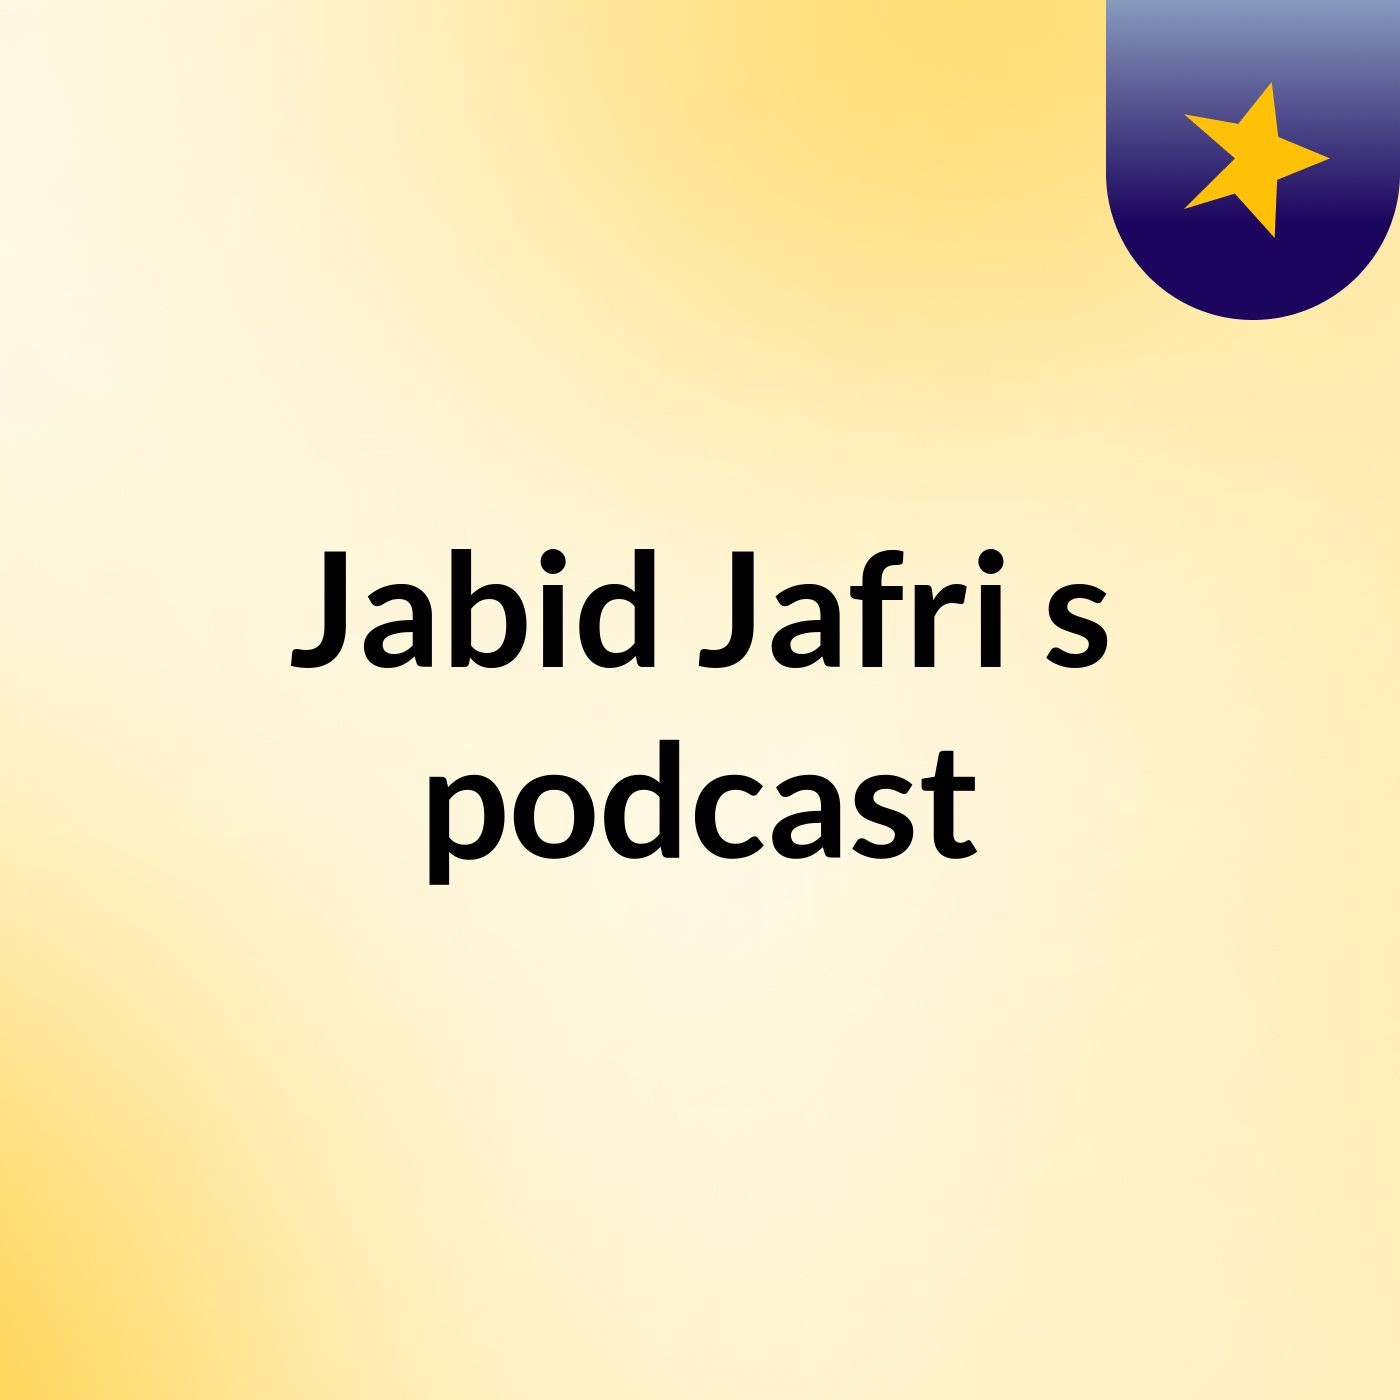 Episode 2 - Jabid Jafri's podcast